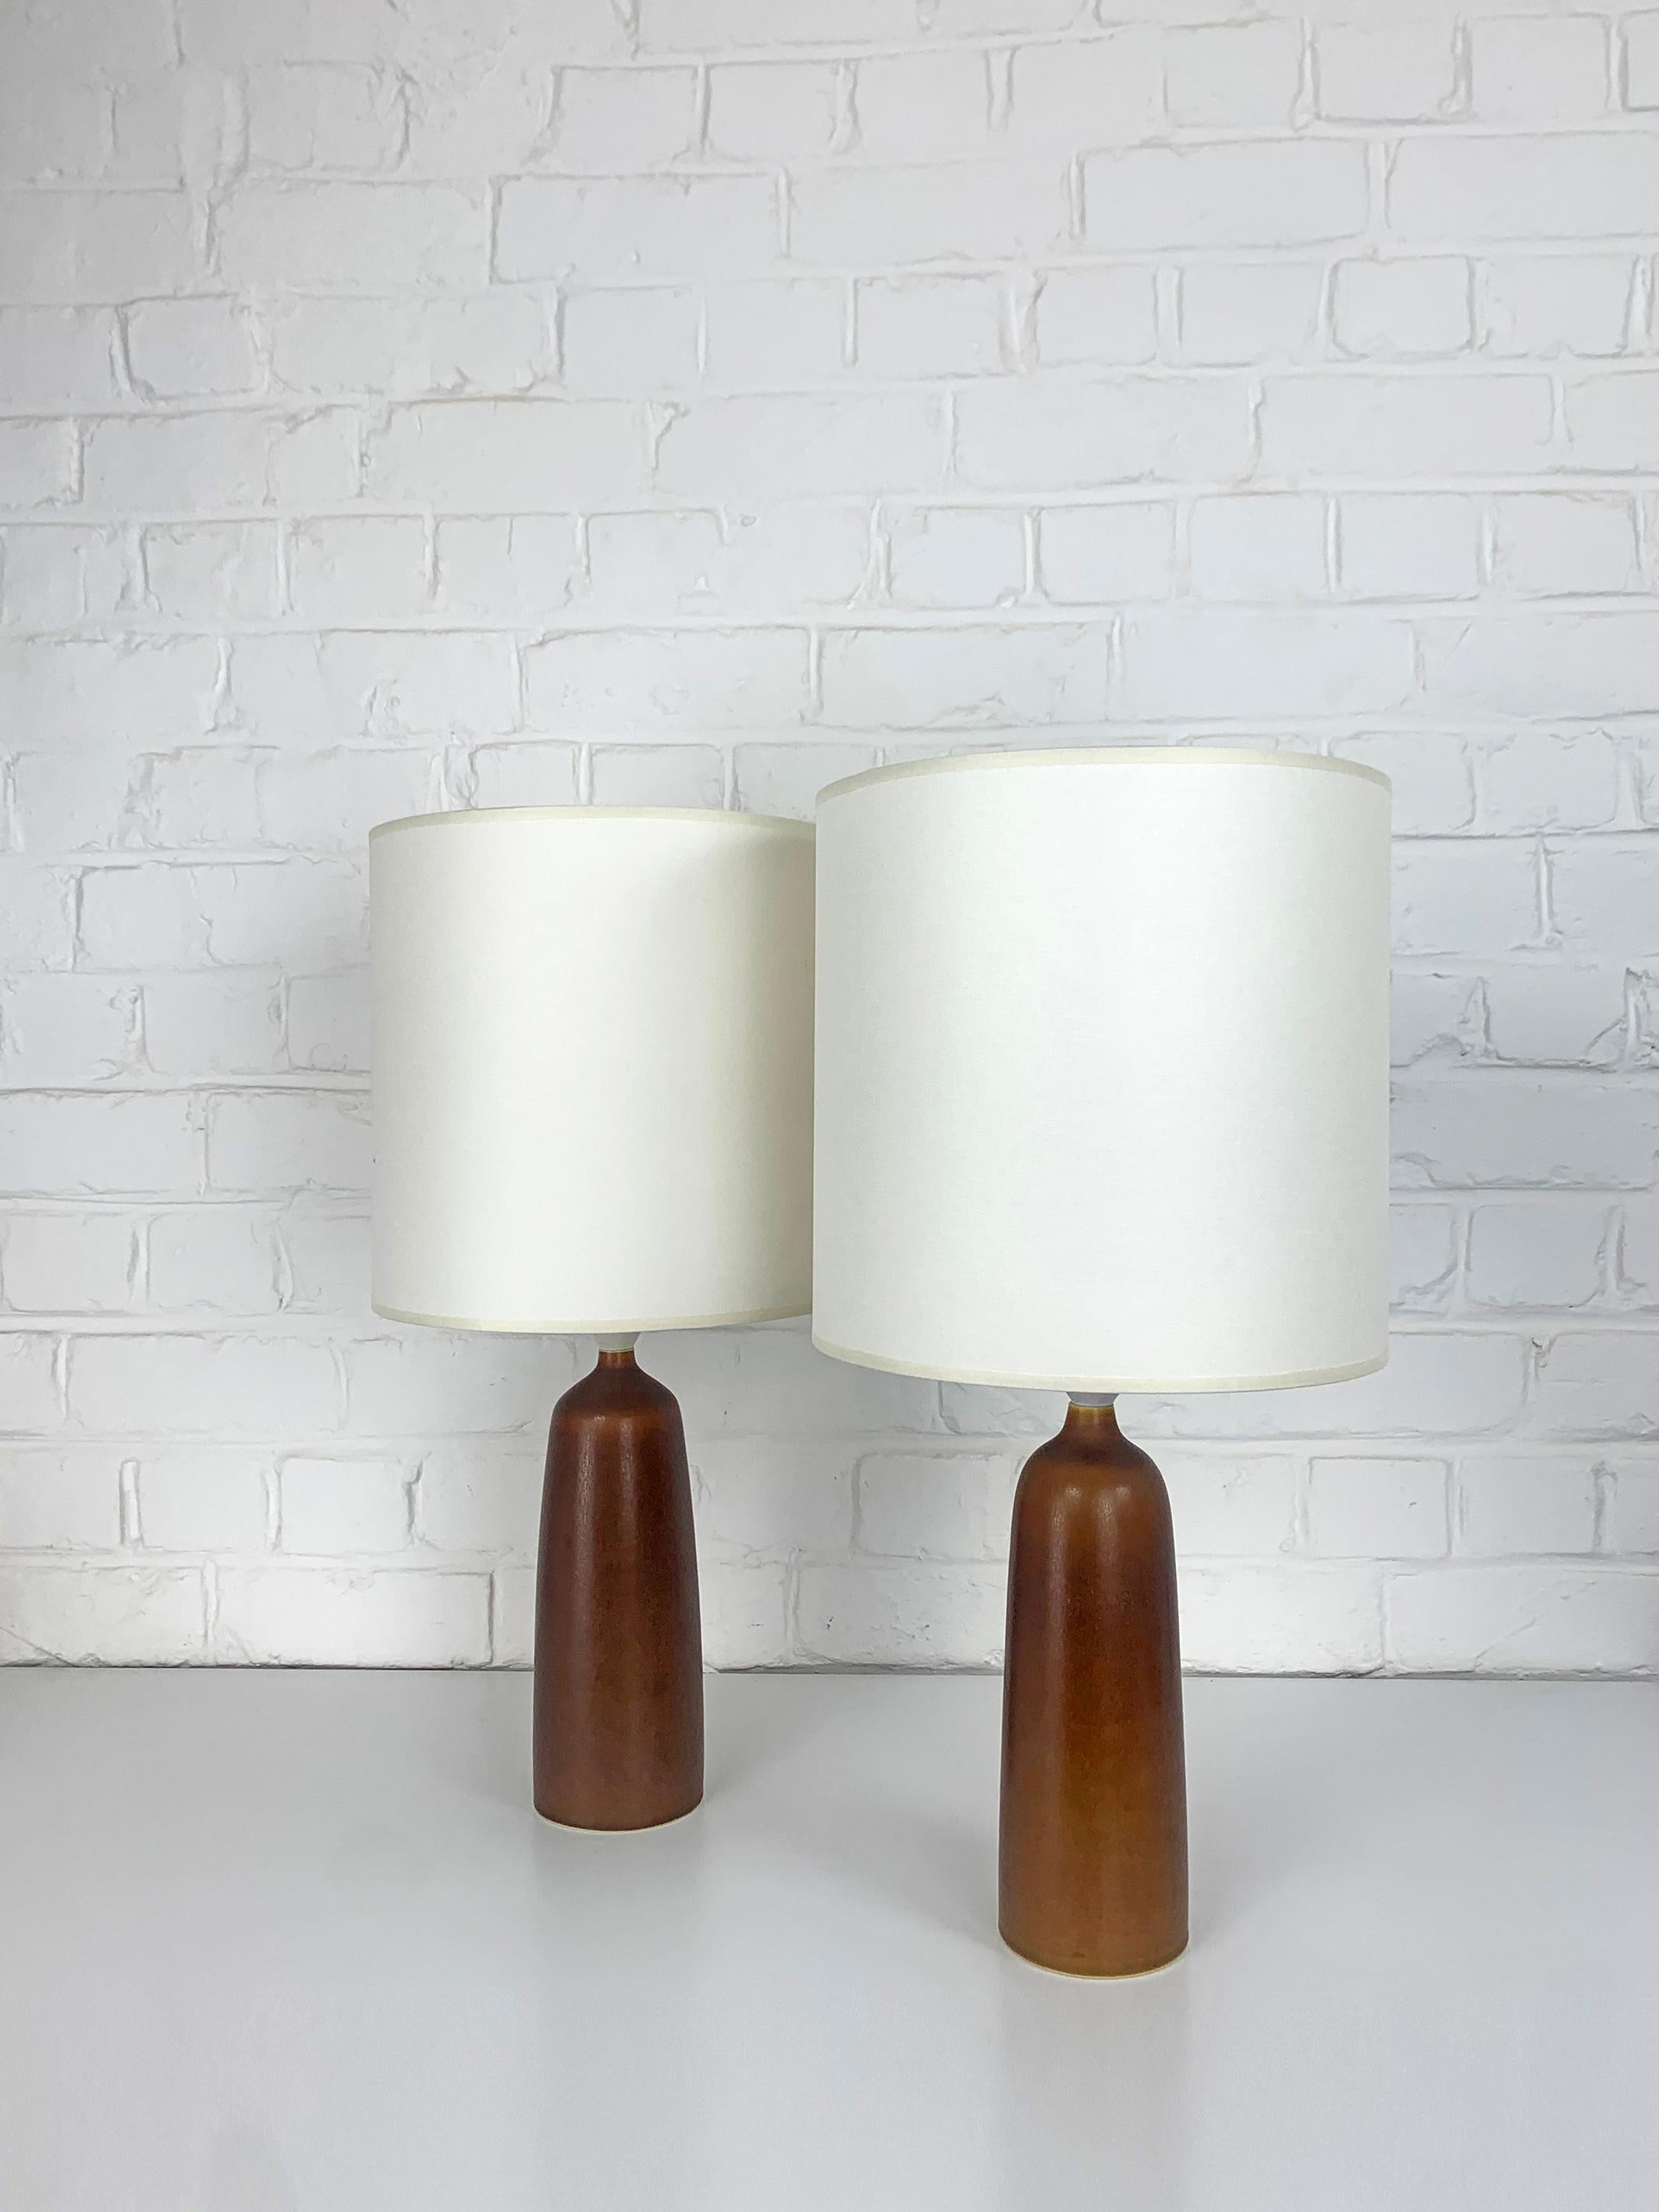 Paar karamellbraune Steingut-Tischlampen, Modell DL17, hergestellt von Palshus (Dänemark). 

Palshus wurde von Per und seiner Frau Annelise Linnemann-Schmidt gegründet. Das Ehepaar kreierte und produzierte Schamottegegenstände (Geschirr, Vasen und